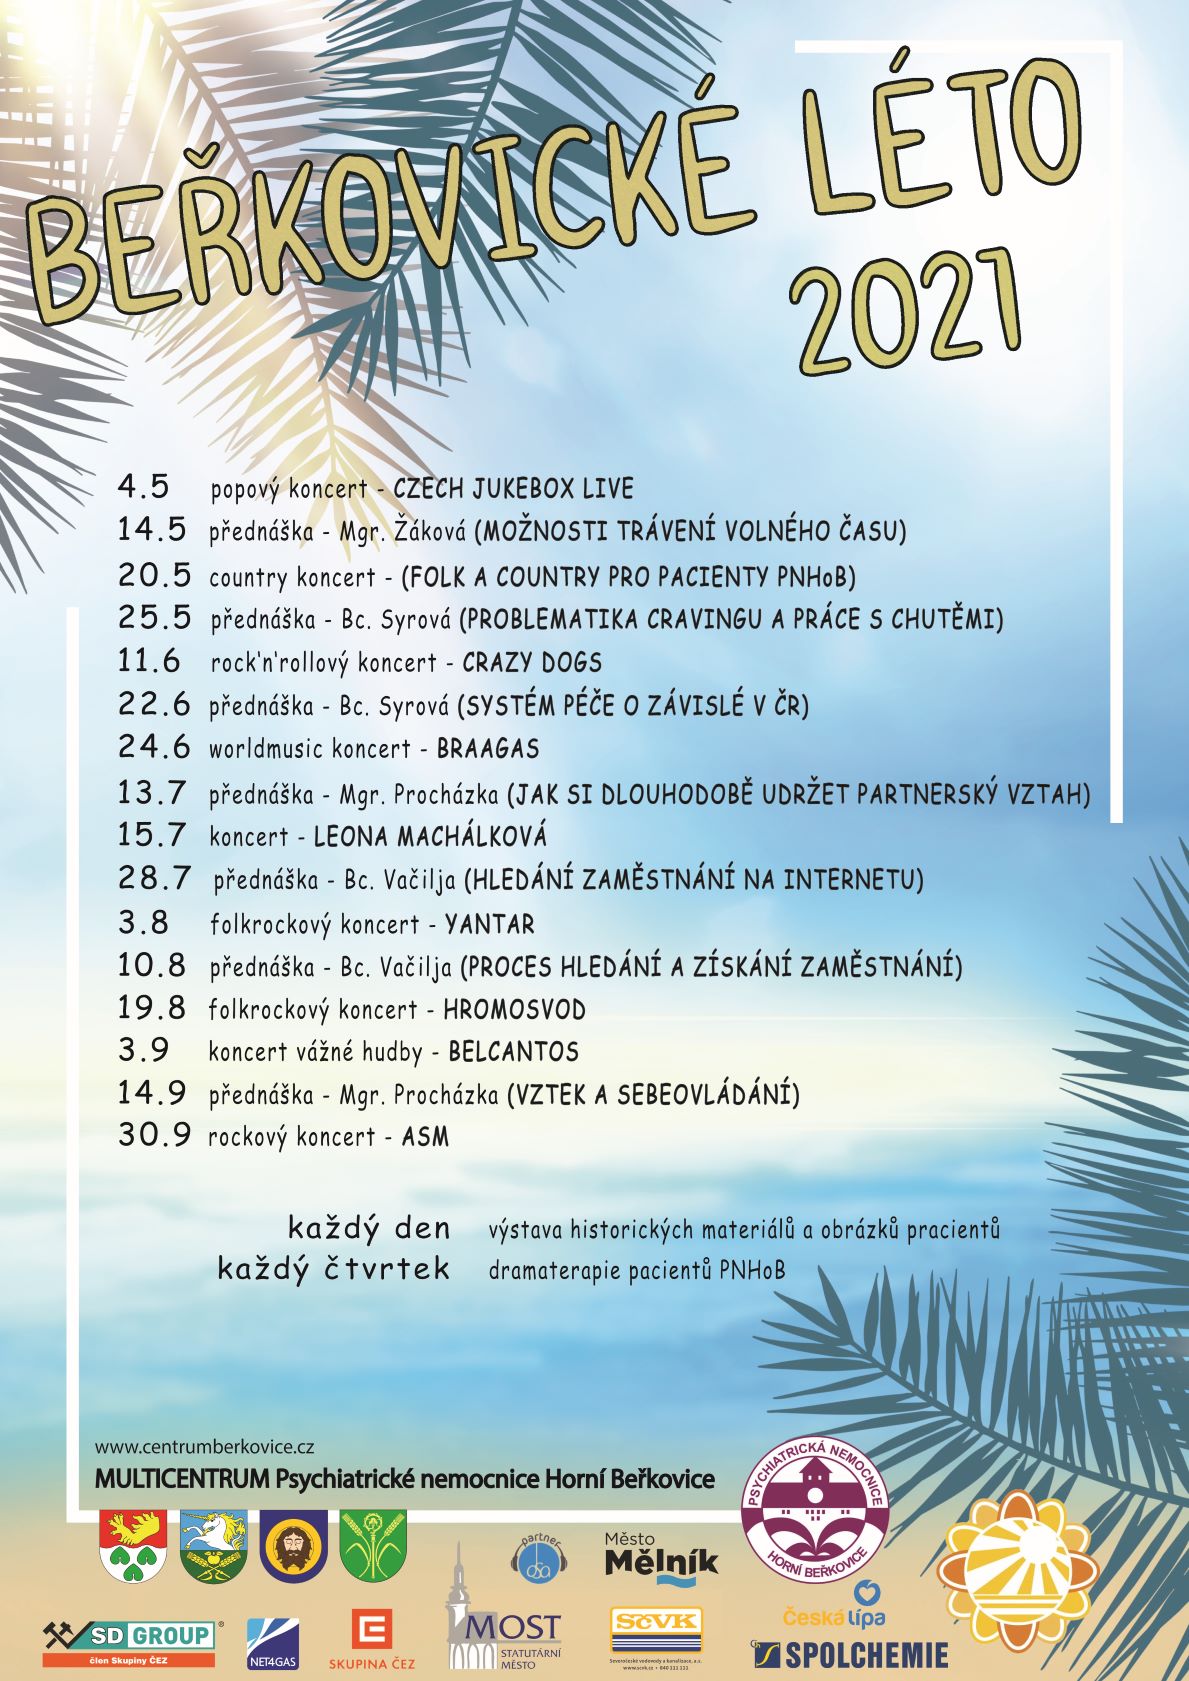 Beřkovice Léto 2021 plakát